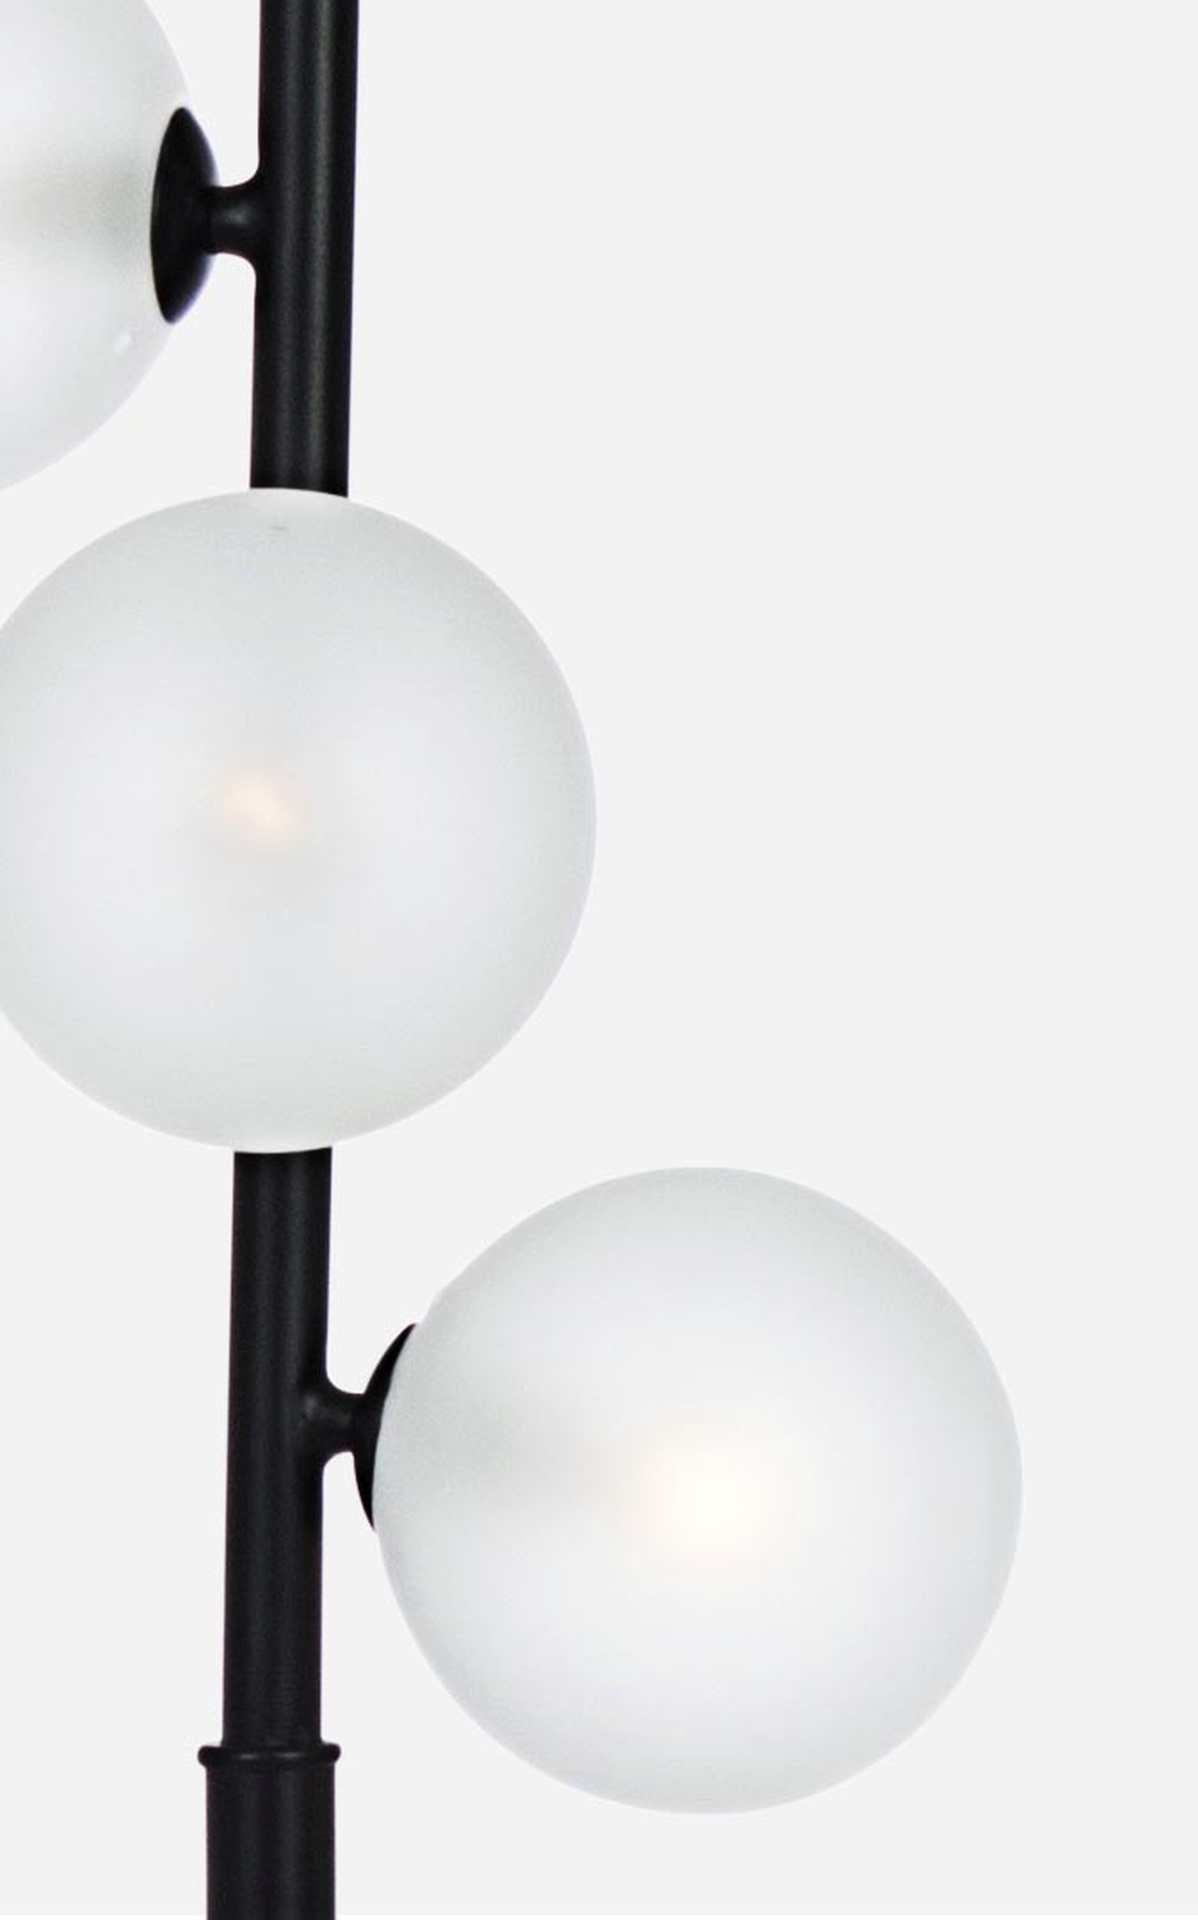 Die Stehlampe Balls überzeugt mit ihrem moderndem Design. Gefertigt wurde sie aus welches einen schwarzen Farbton besitzt. Die Lampengehäuse sind aus Milchglas- Die Lampe verfügt insgesamt über fünf Lichtquellen, mit G9 MAX 3W Glühbirnen. Die Kabellänge d